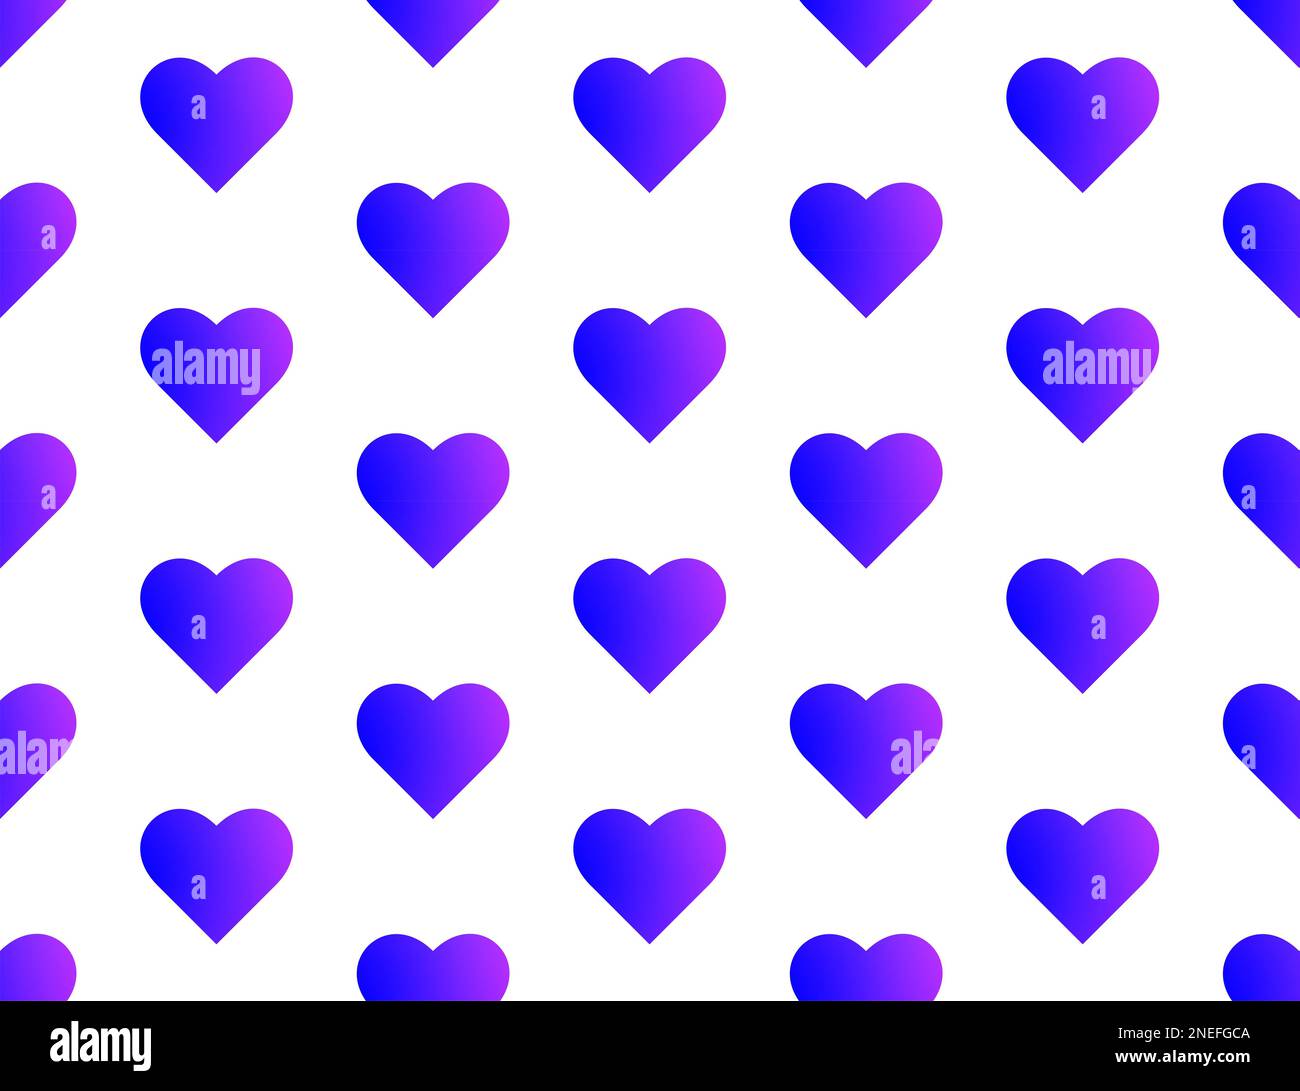 Patrón de corazones azul y púrpura sin fisuras – corazones de gran tamaño – fondo blanco Foto de stock